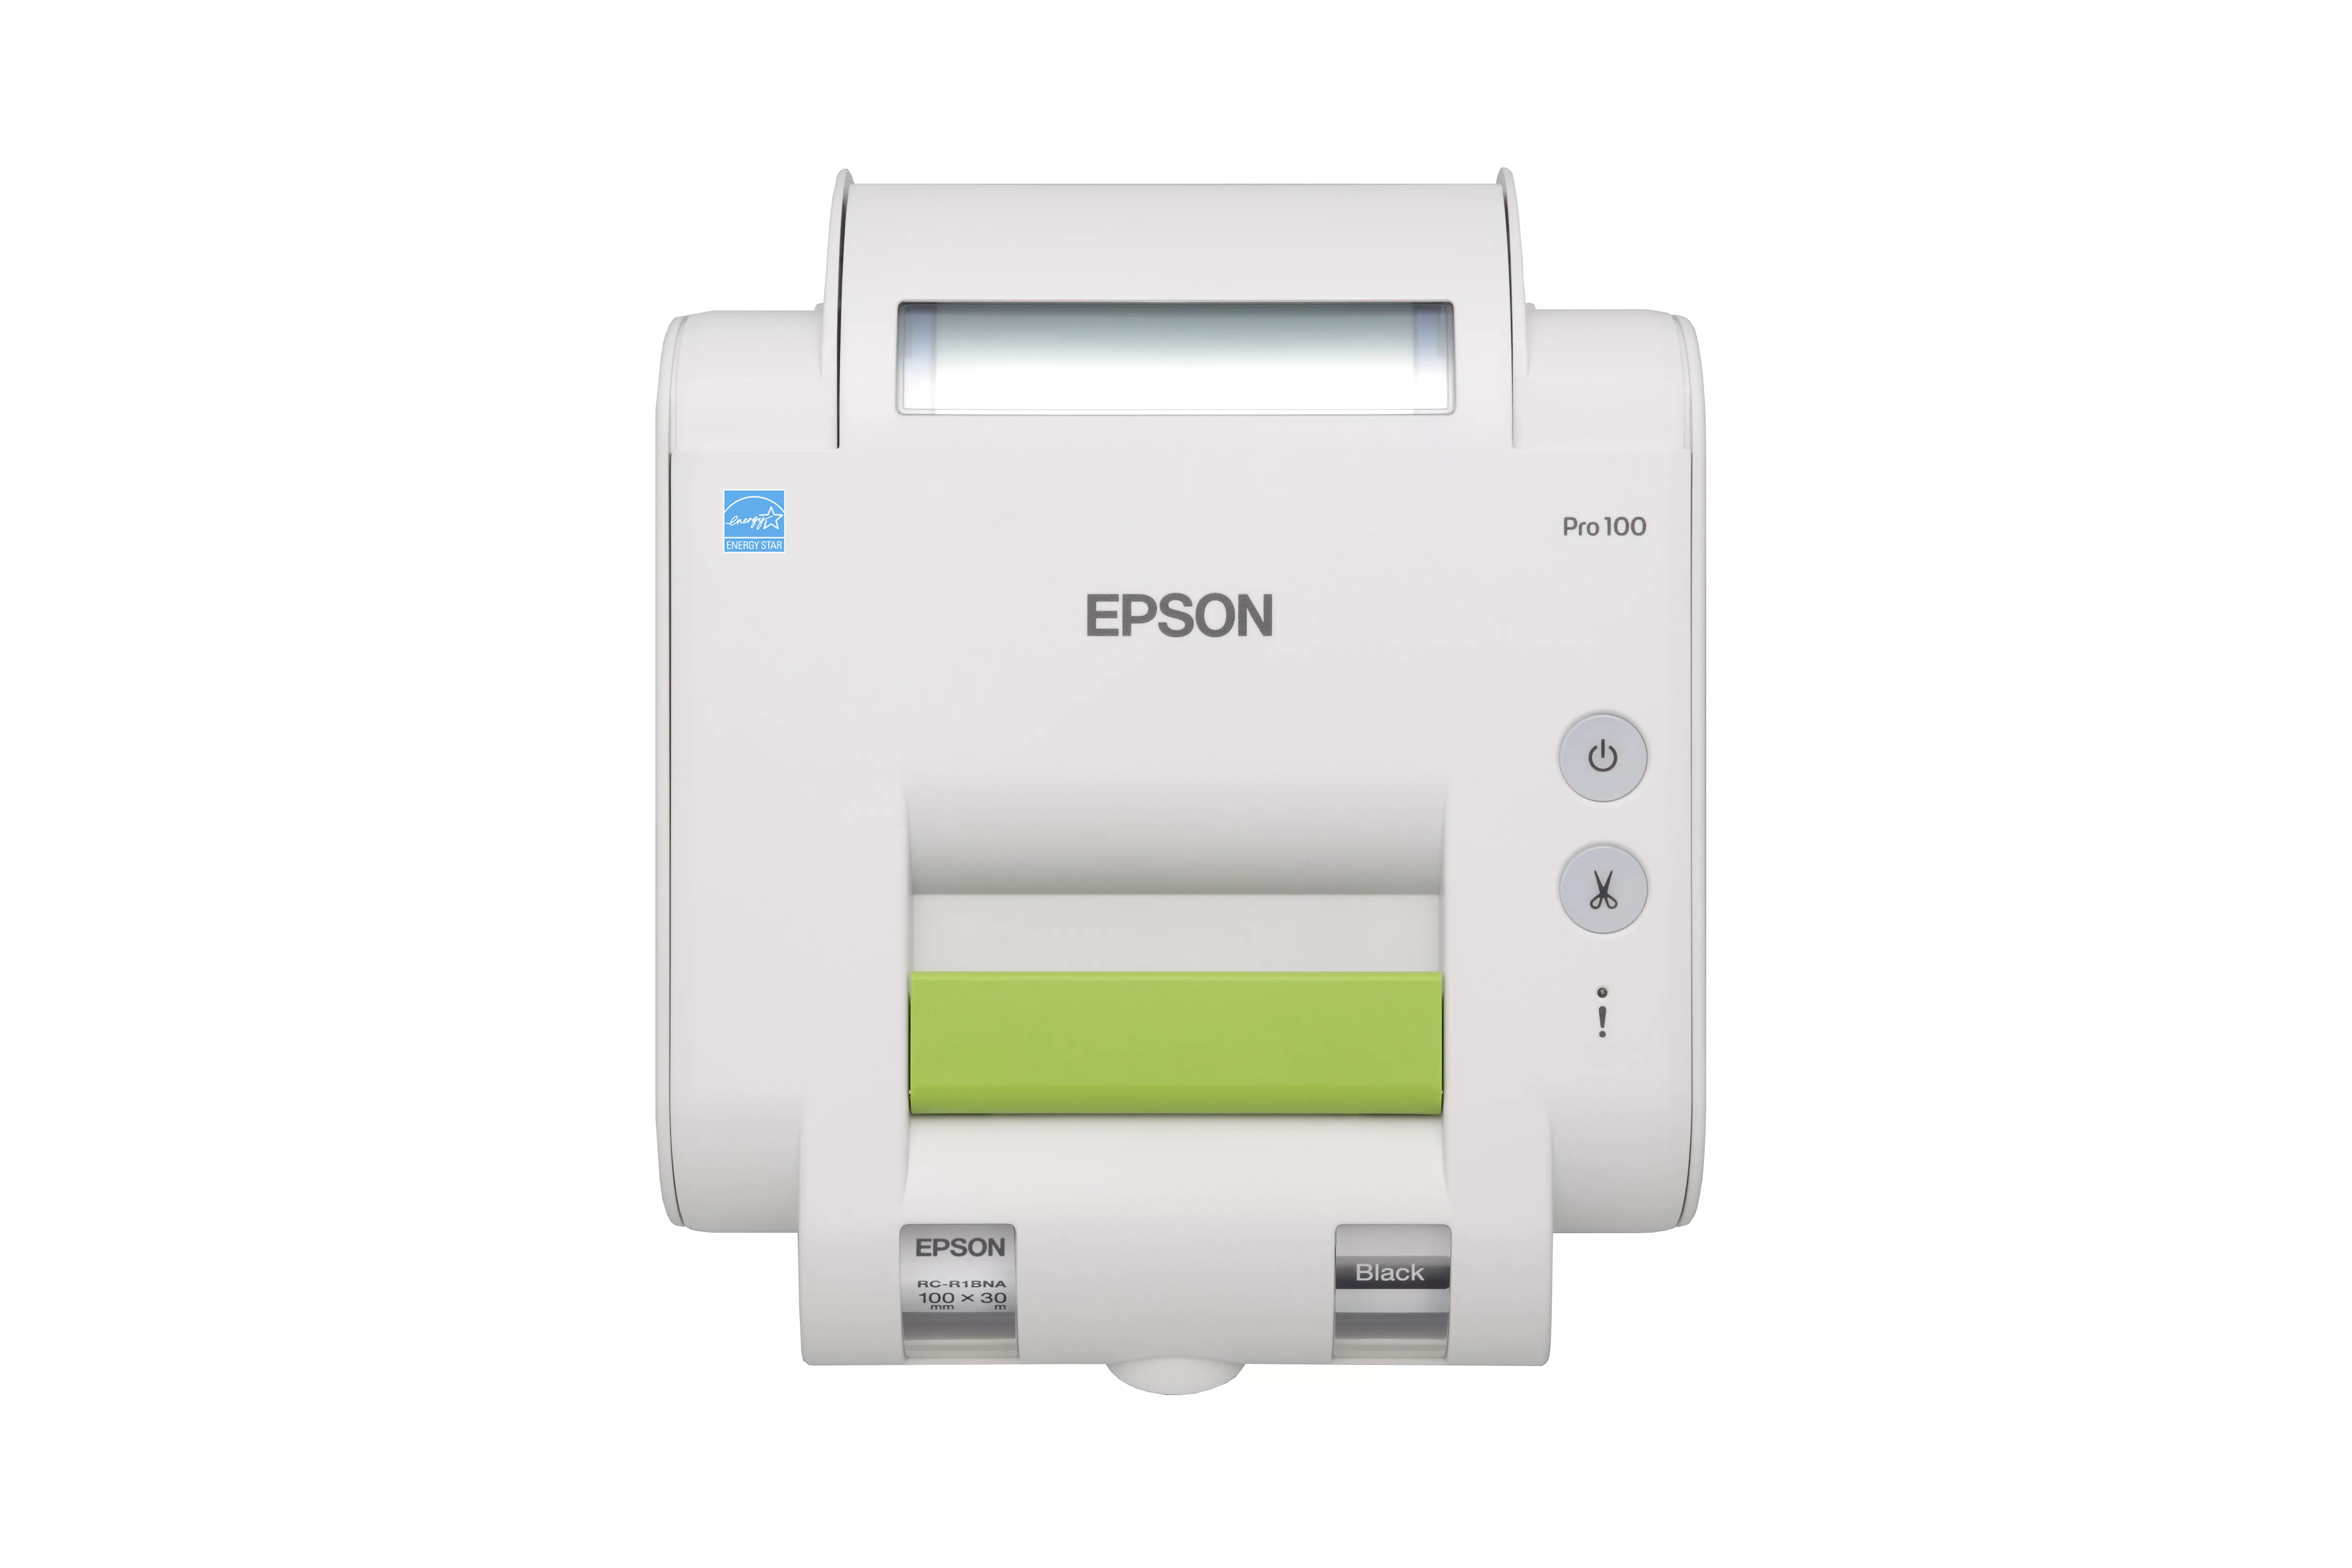 Vente Epson LabelWorks Pro100 Epson au meilleur prix - visuel 2